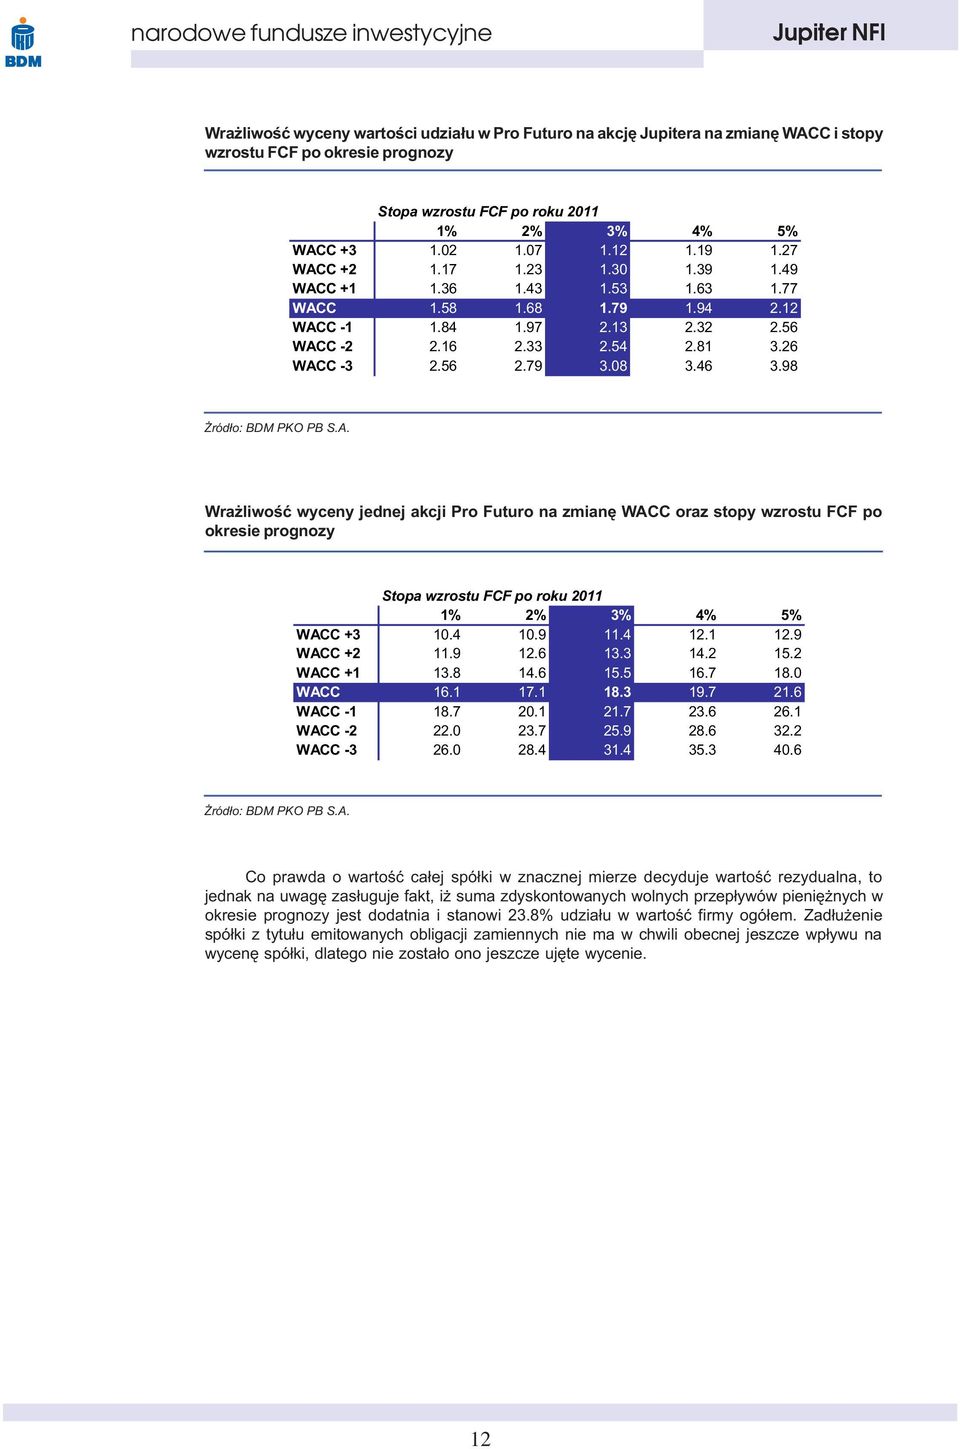 98 Wra liwoœæ wyceny jednej akcji Pro Futuro na zmianê WACC oraz stopy wzrostu FCF po okresie prognozy Stopa wzrostu FCF po roku 2011 1% 2% 3% 4% 5% WACC +3 10.4 10.9 11.4 12.1 12.9 WACC +2 11.9 12.